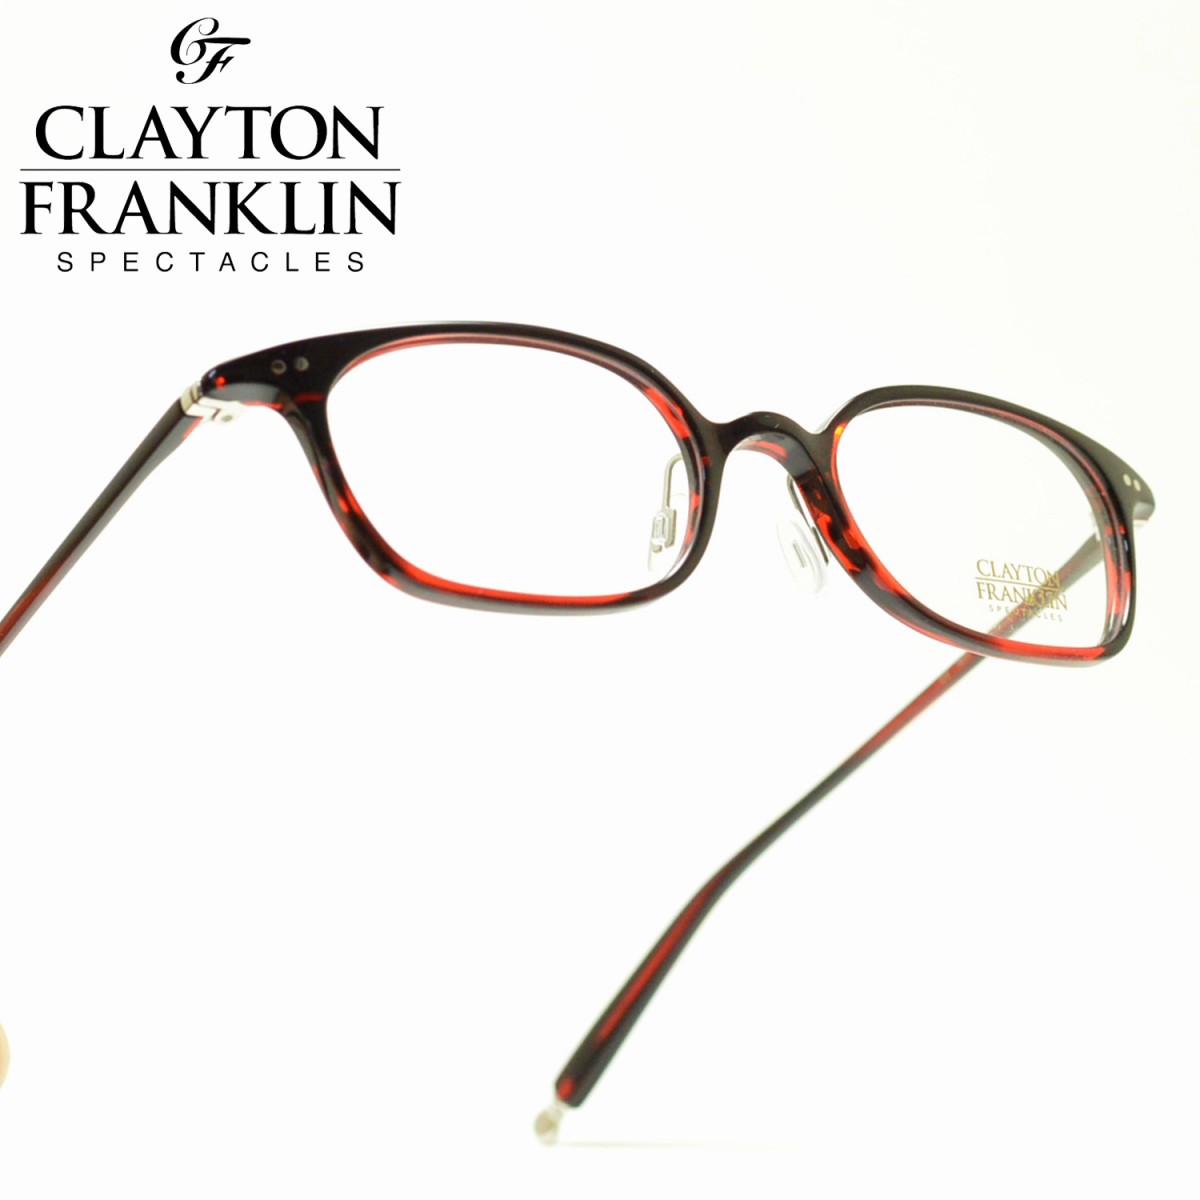 楽天市場 Clayton Franklin クレイトンフランクリン722 Bkdh ブラックデミハーフメガネ 眼鏡 めがね メンズ レディース おしゃれ ブランド 人気 おすすめ フレーム 流行り 度付き レンズ デコリンメガネ